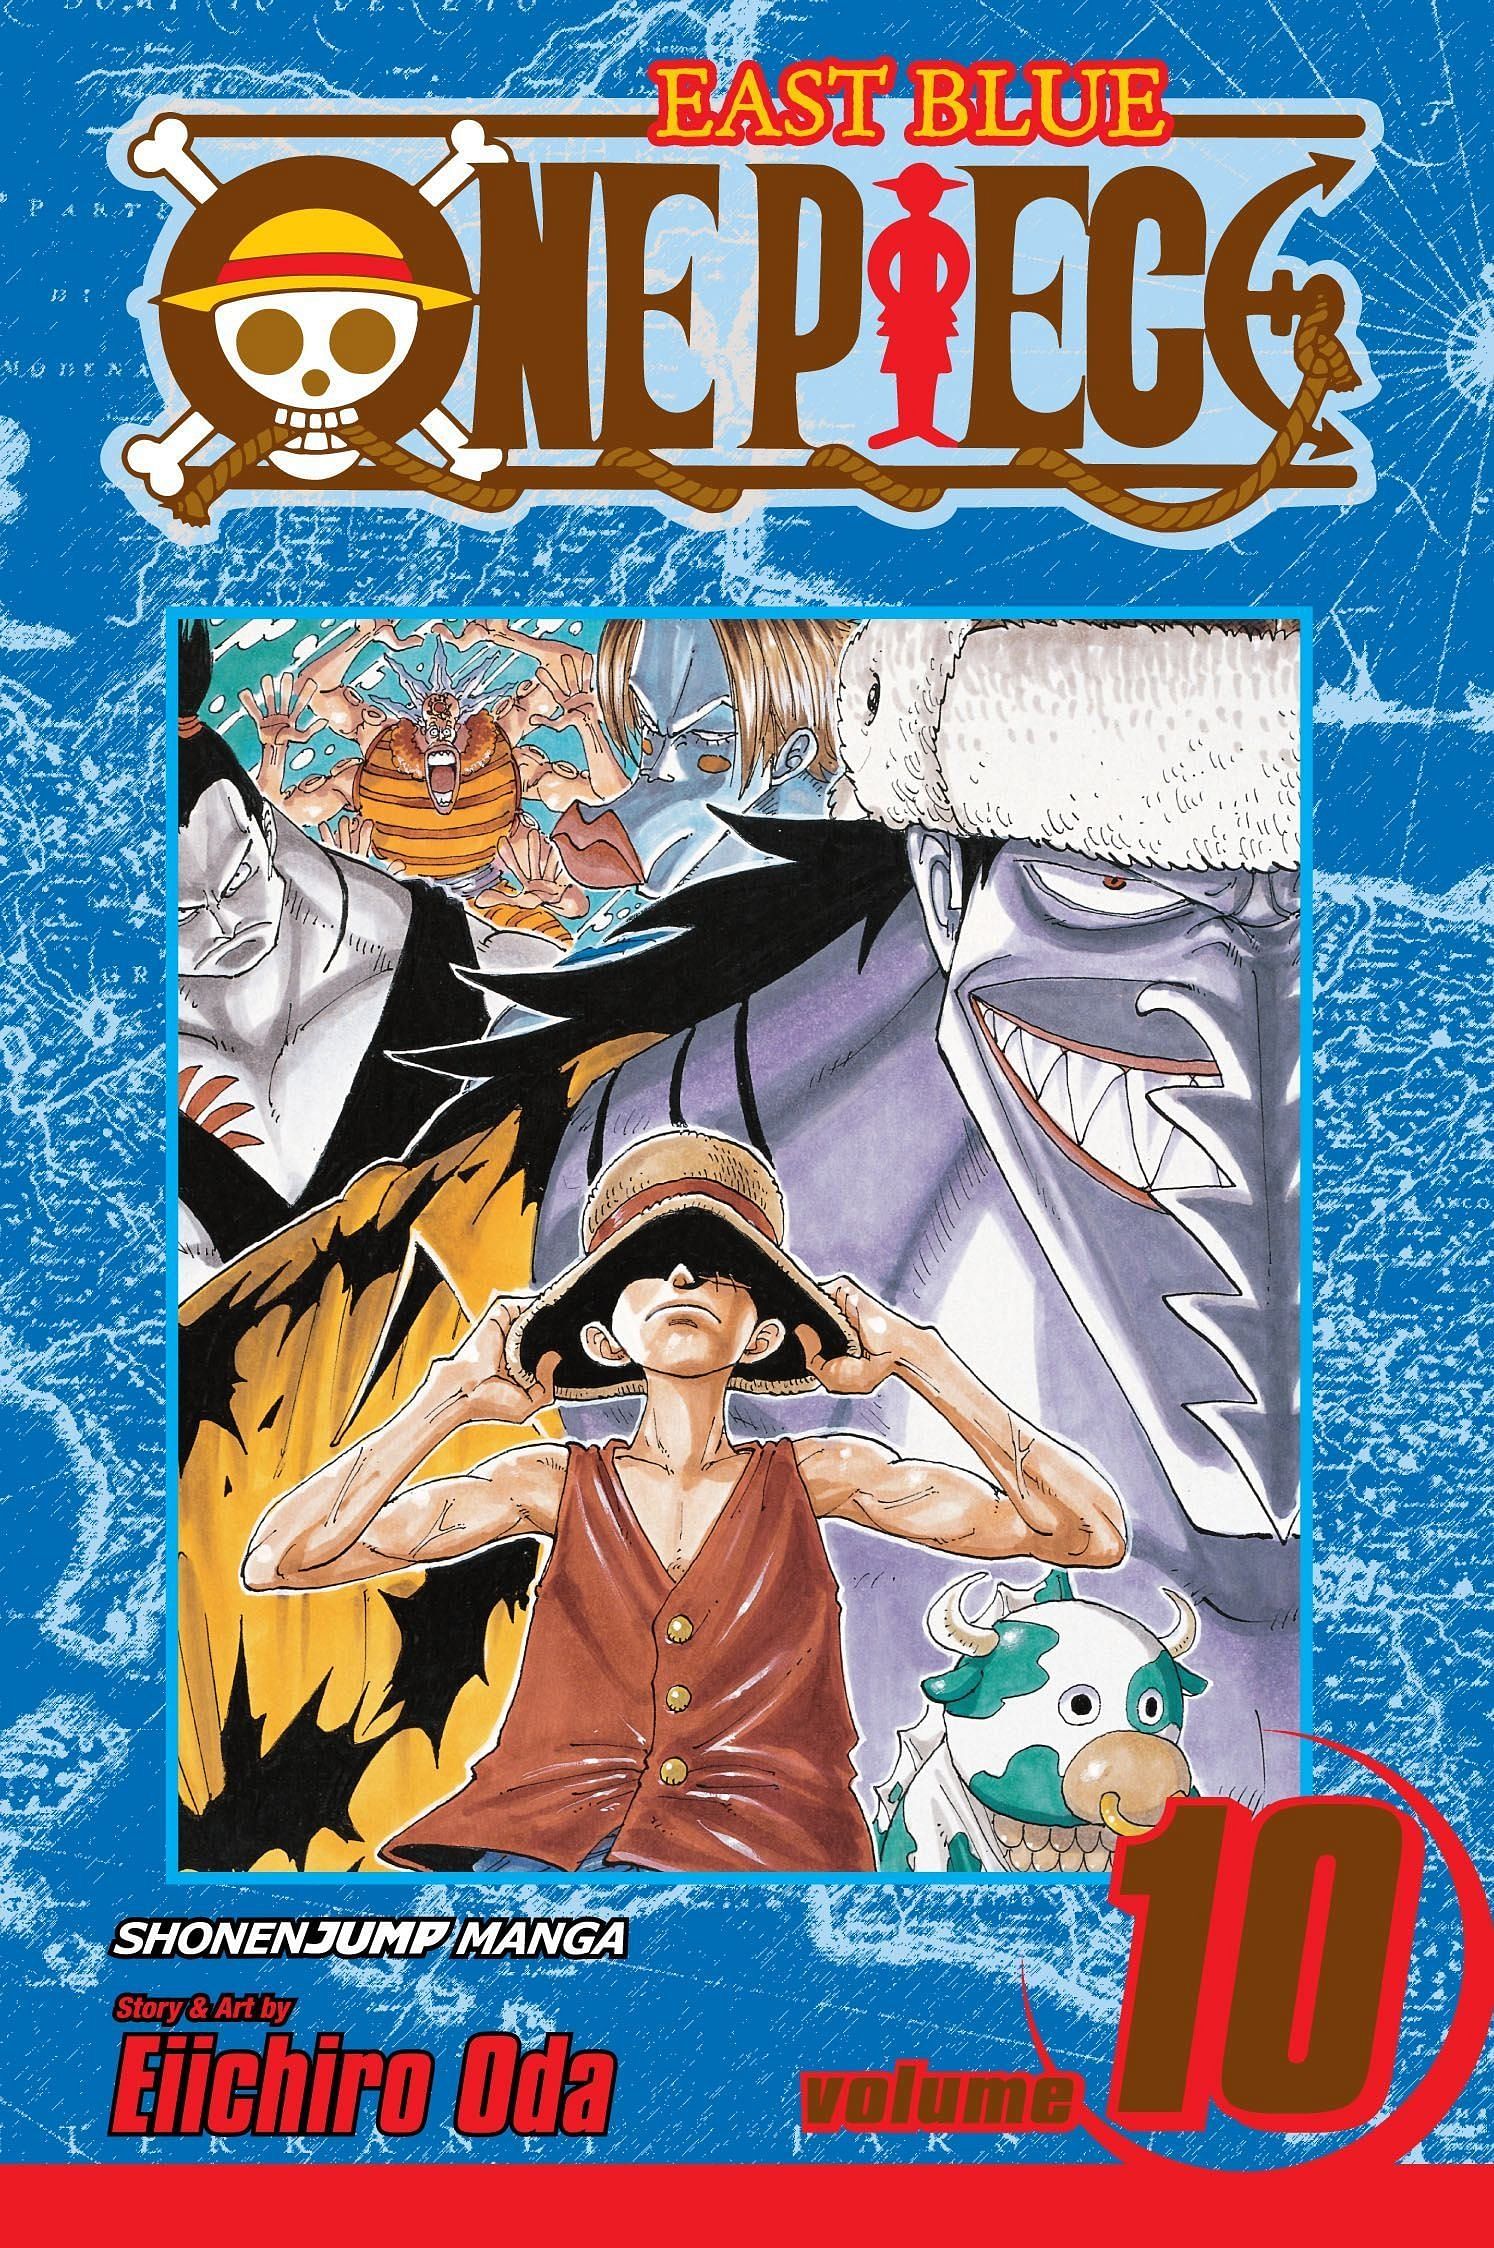 The cover art for One Piece Volume 10 (Image via Shueisha)